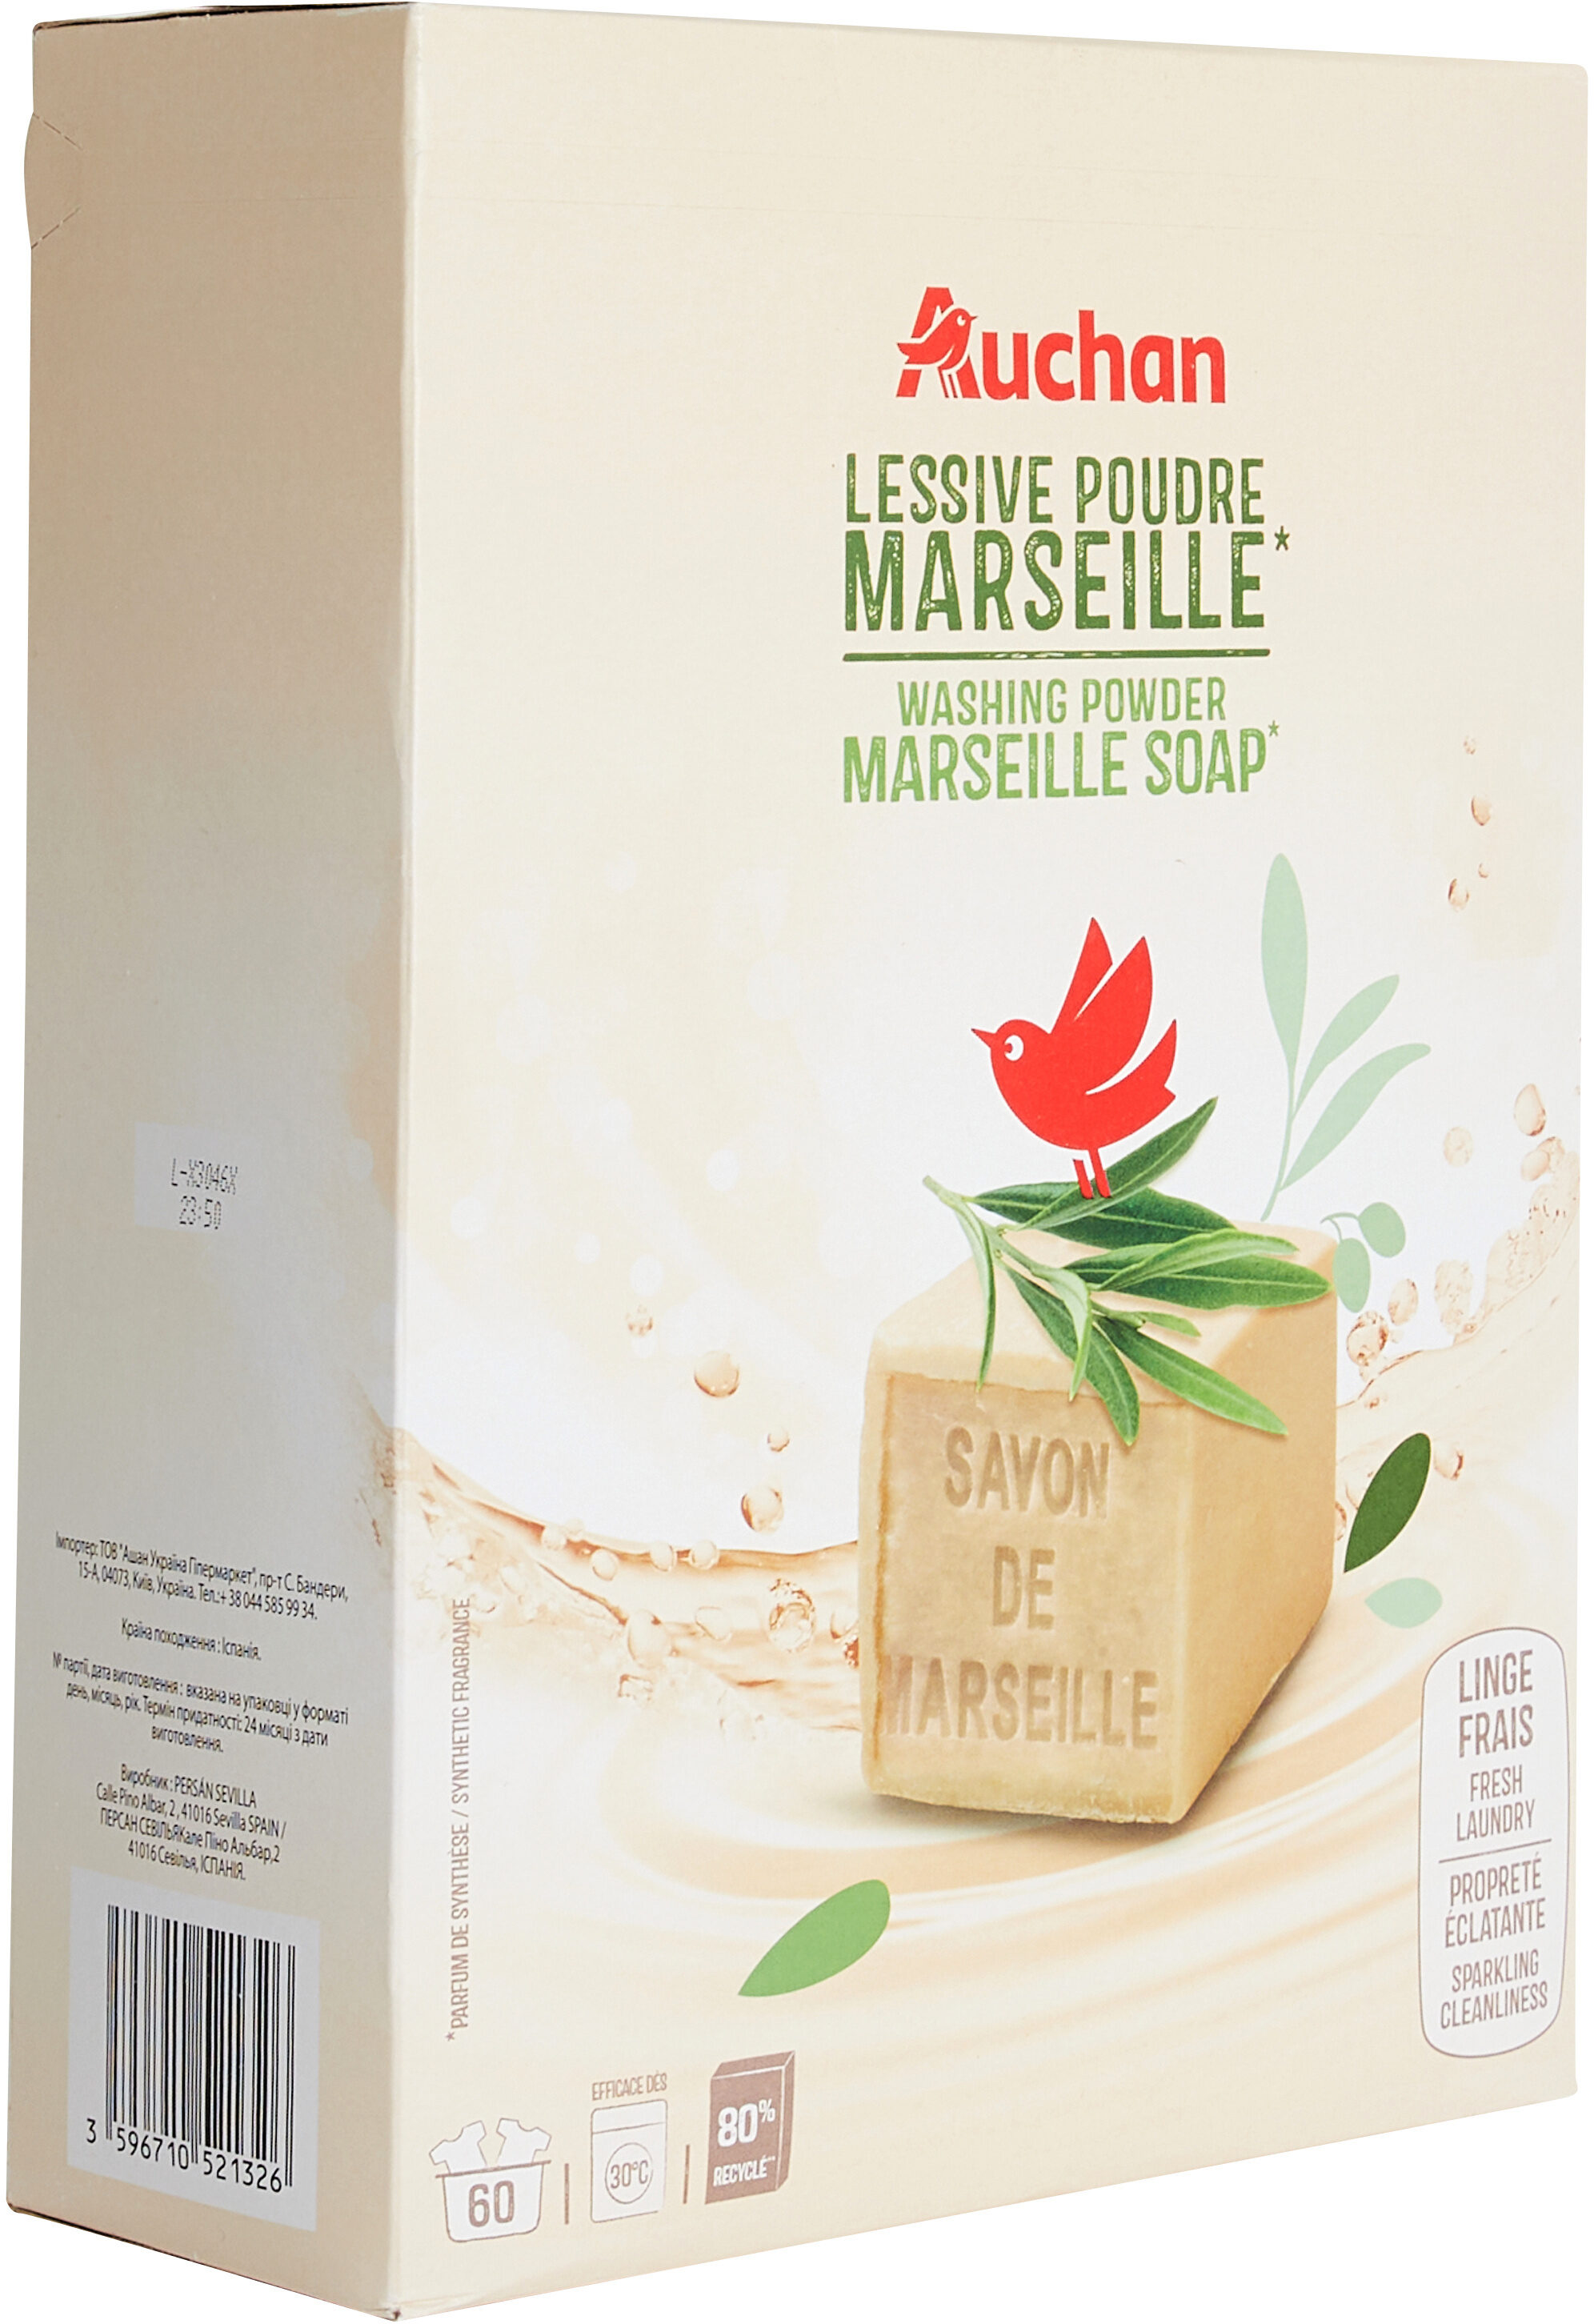 Auchan Savon de marseilleLessive poudre pour le lavage du linge - Product - fr